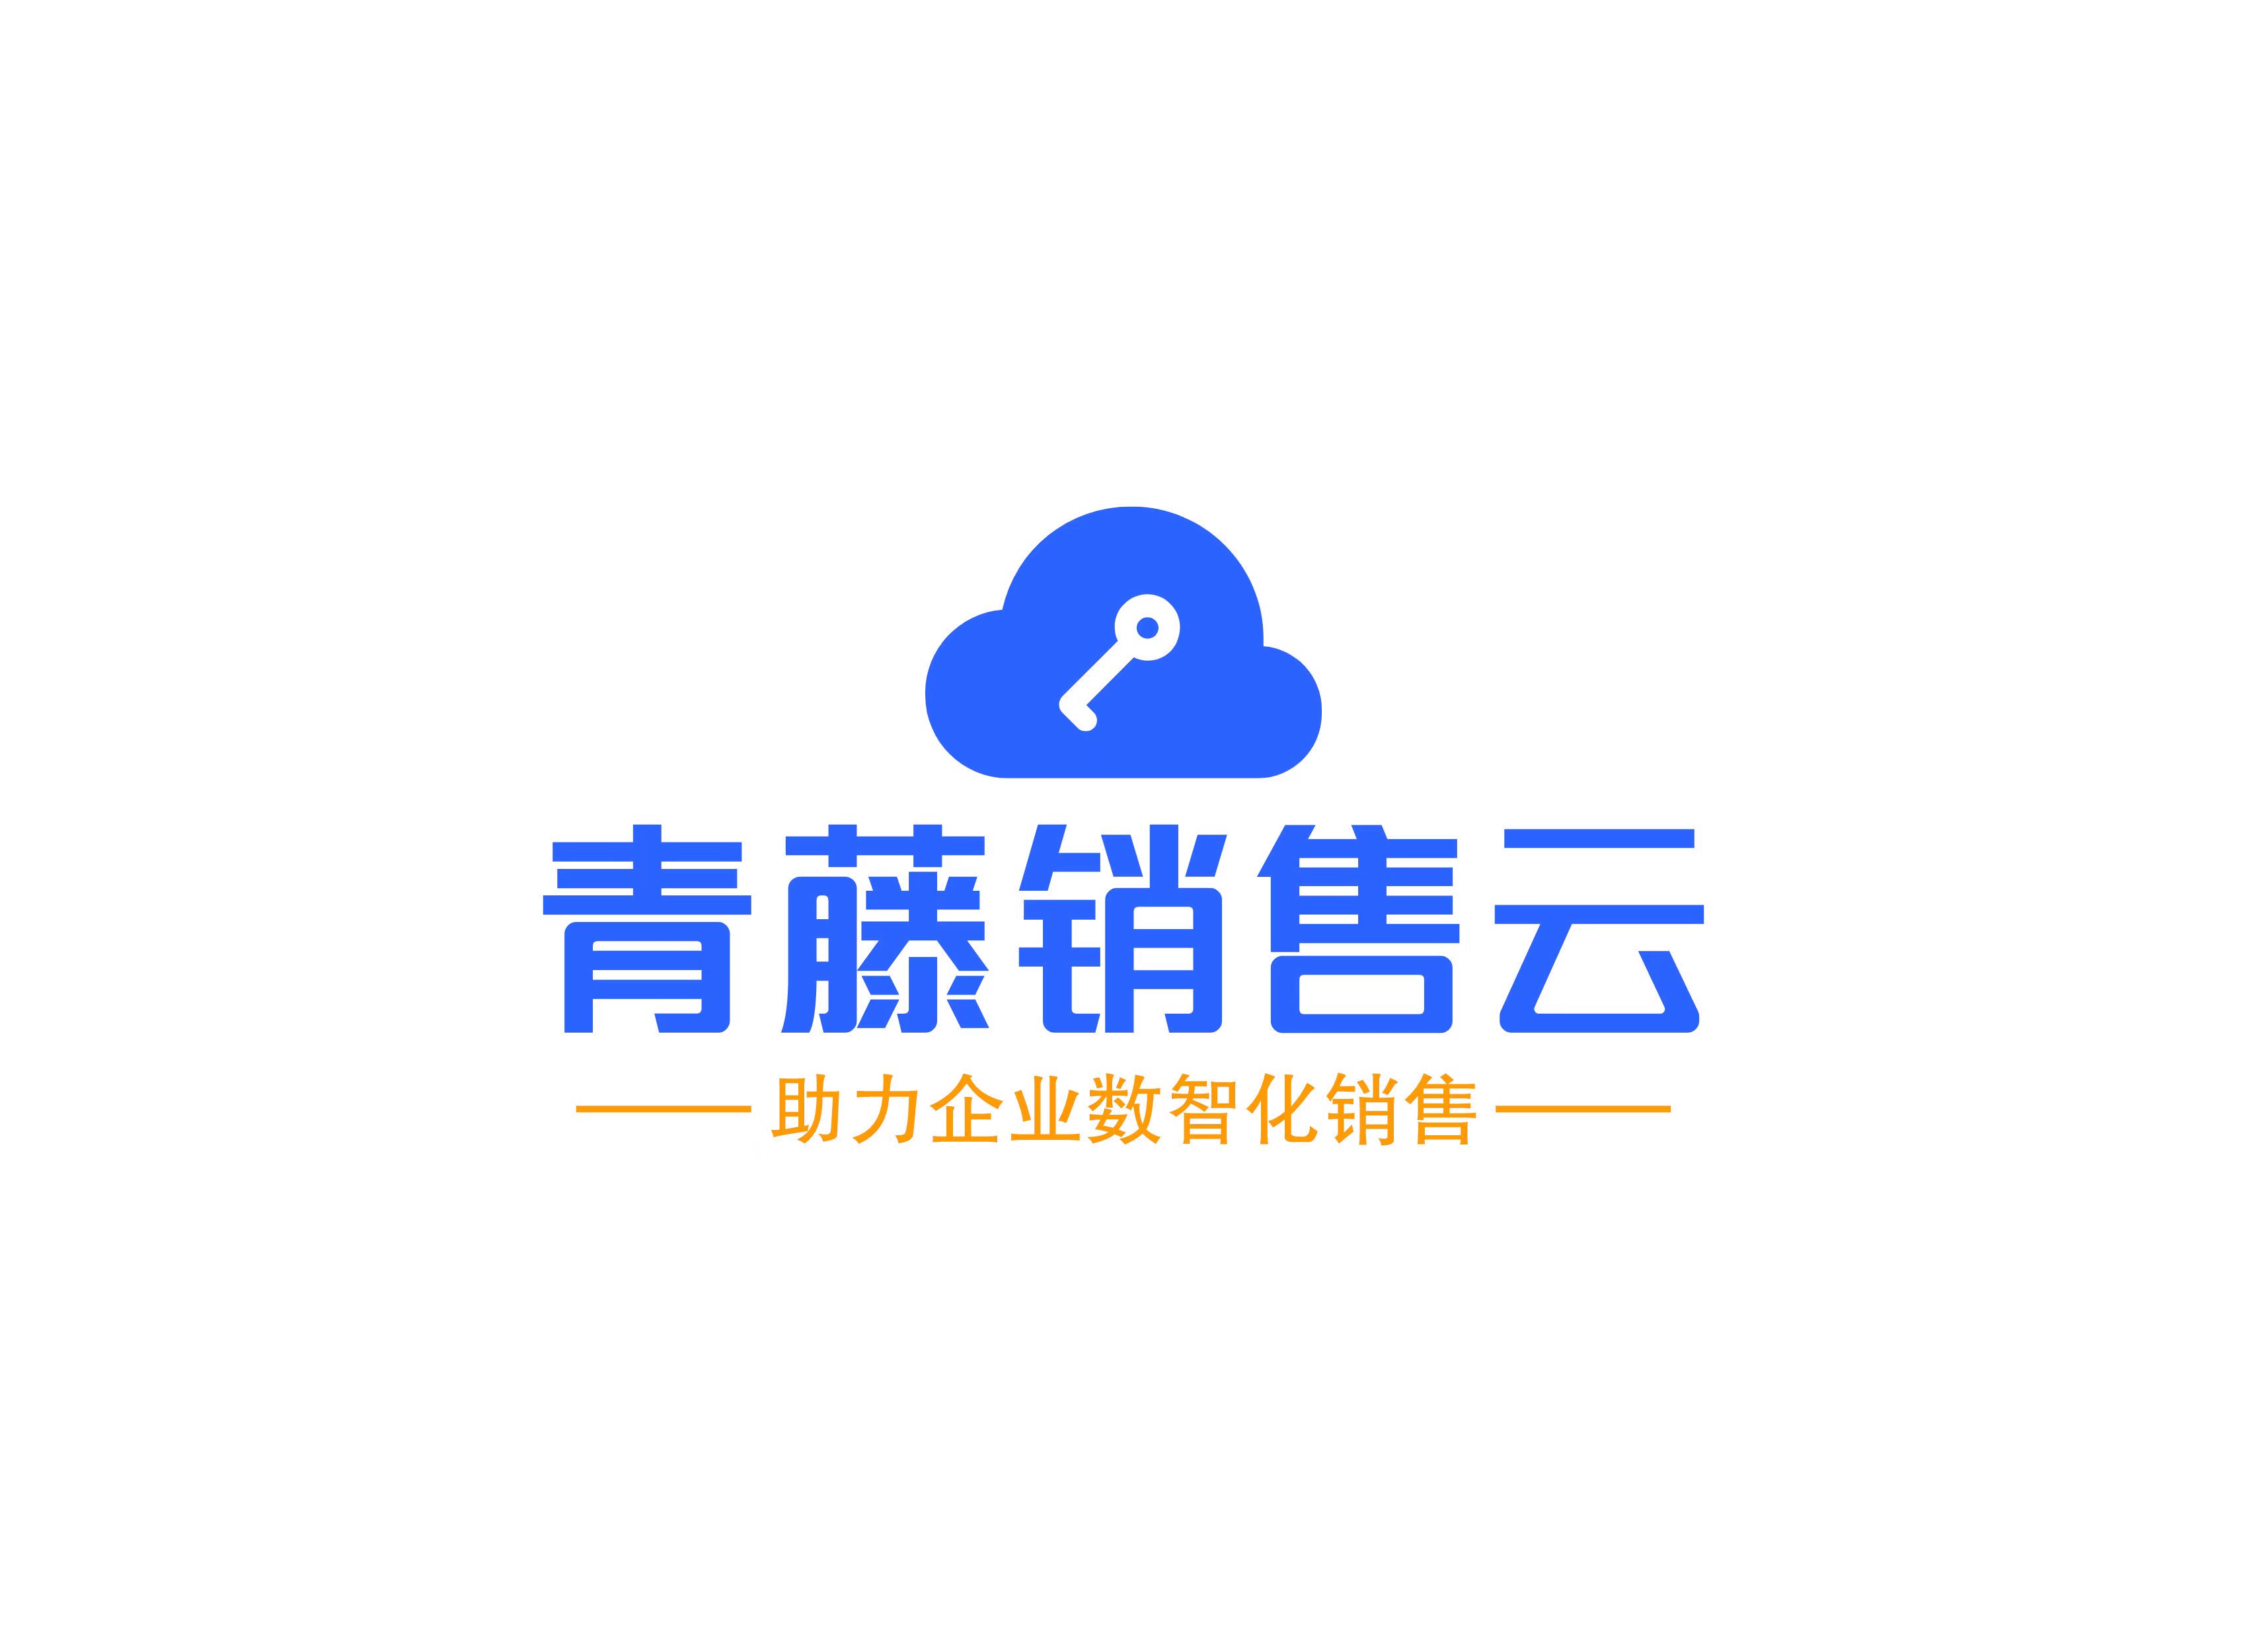 河南省青藤计算机科技有限公司